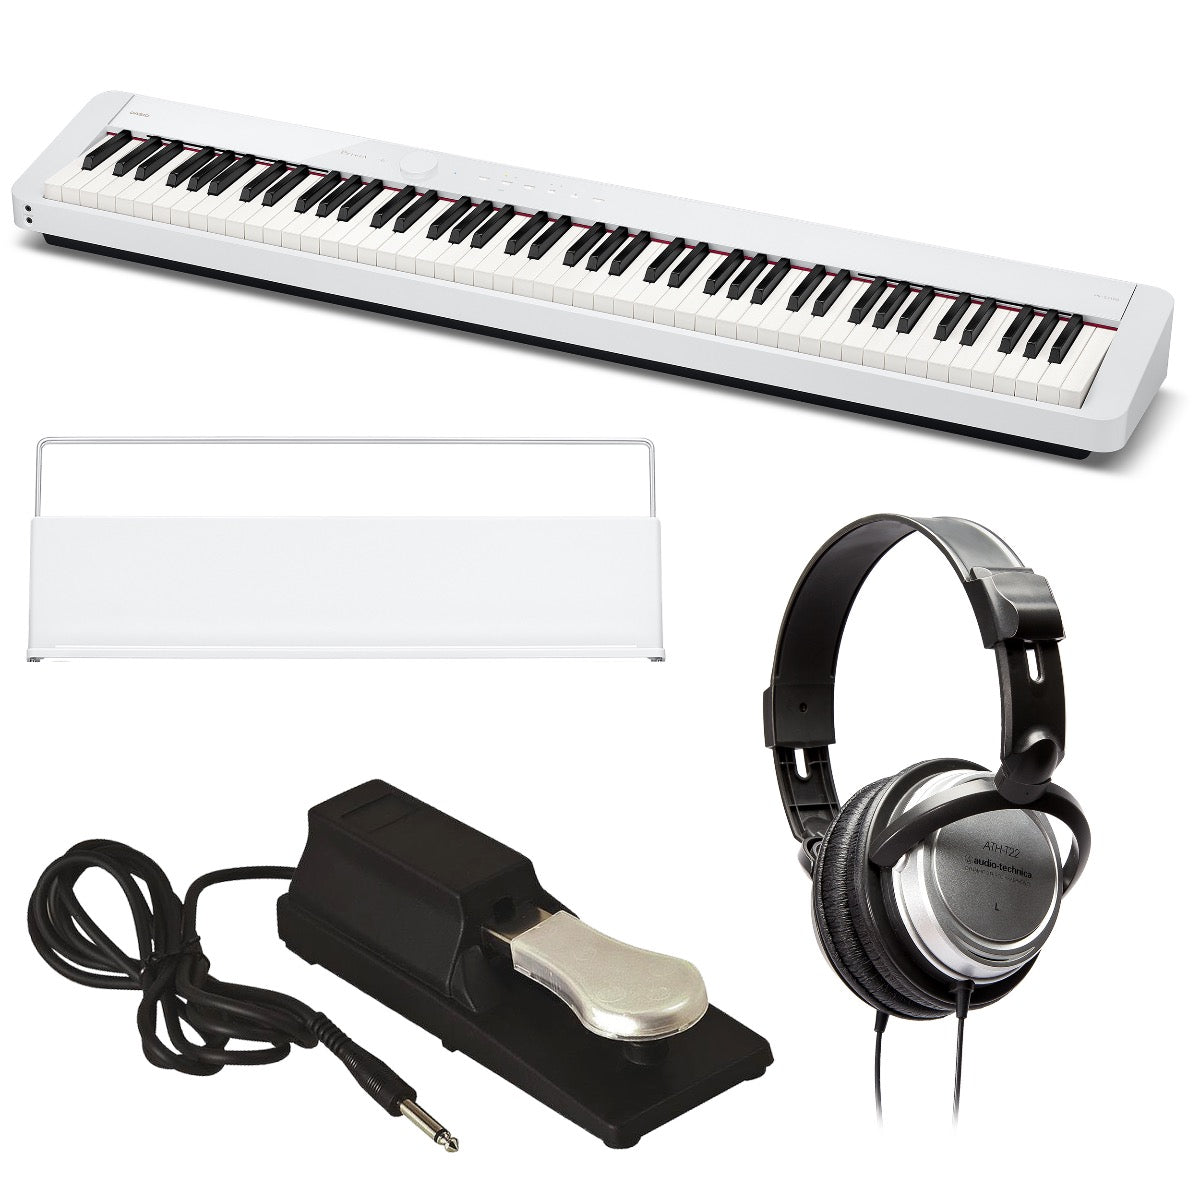 Casio Privia PX-S1100 Digital Piano - White BONUS PAK – Kraft Music